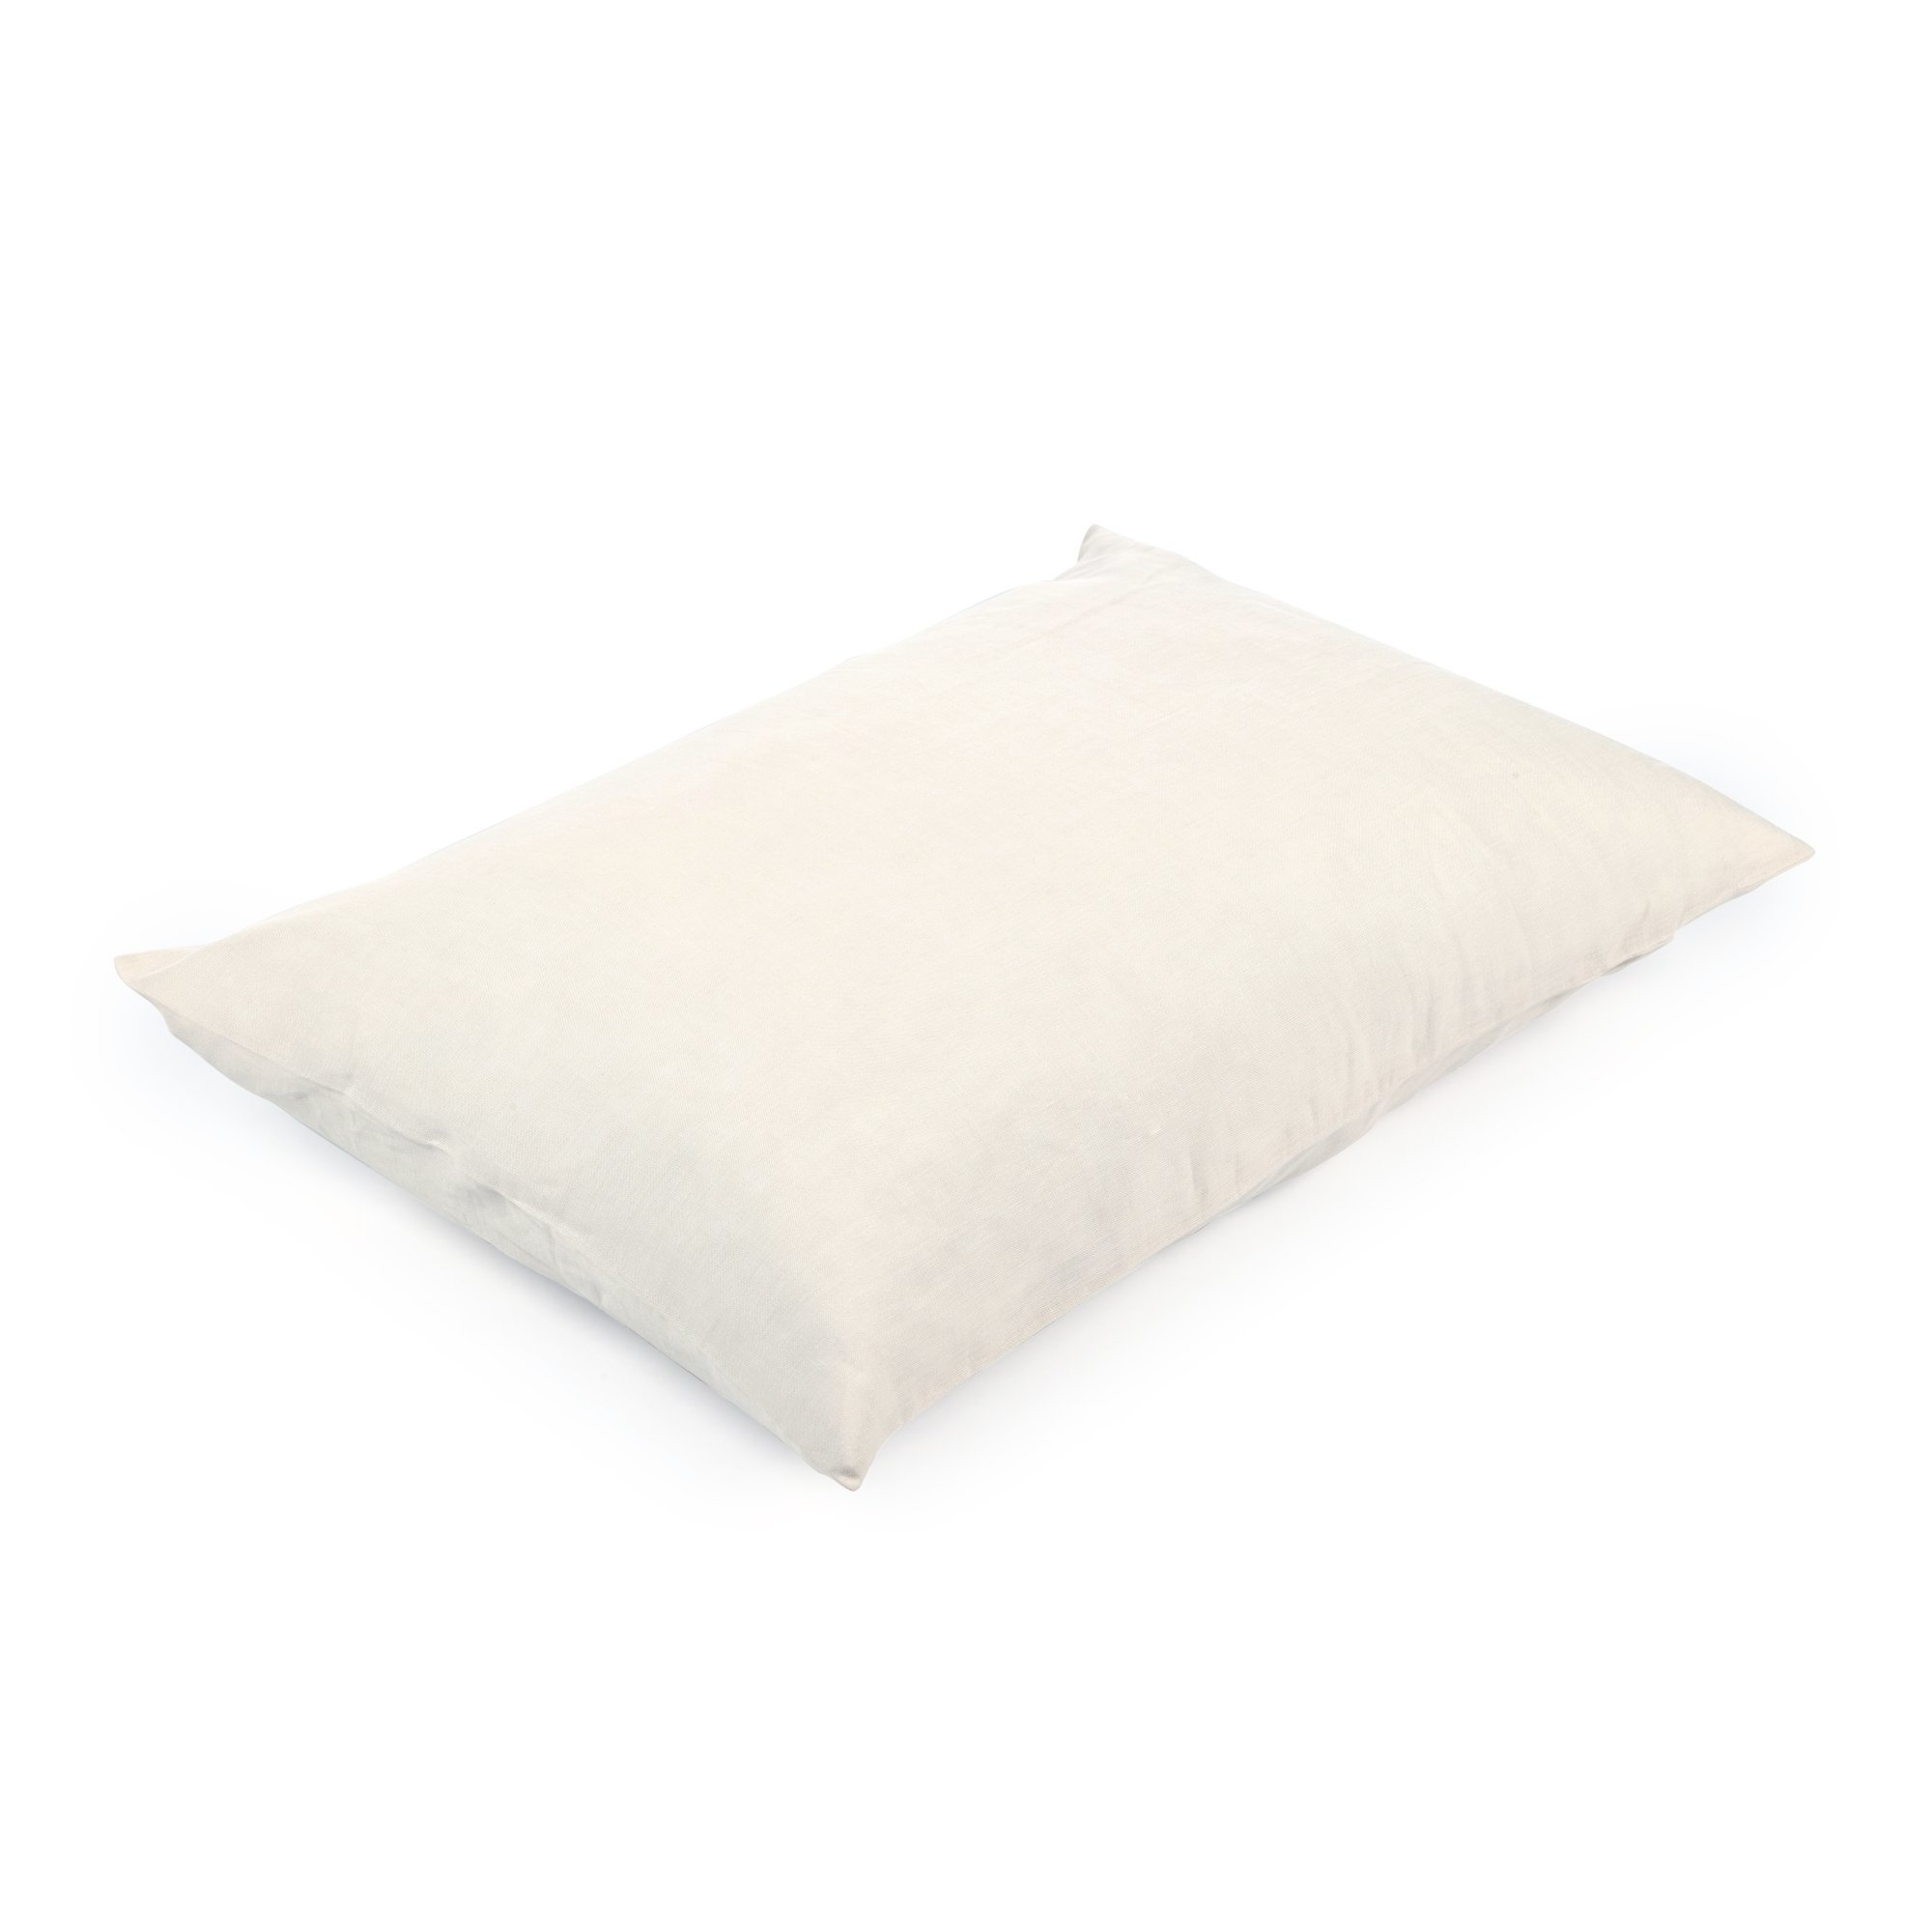 Pillow Sham - Santiago - White Sand - Euro-1